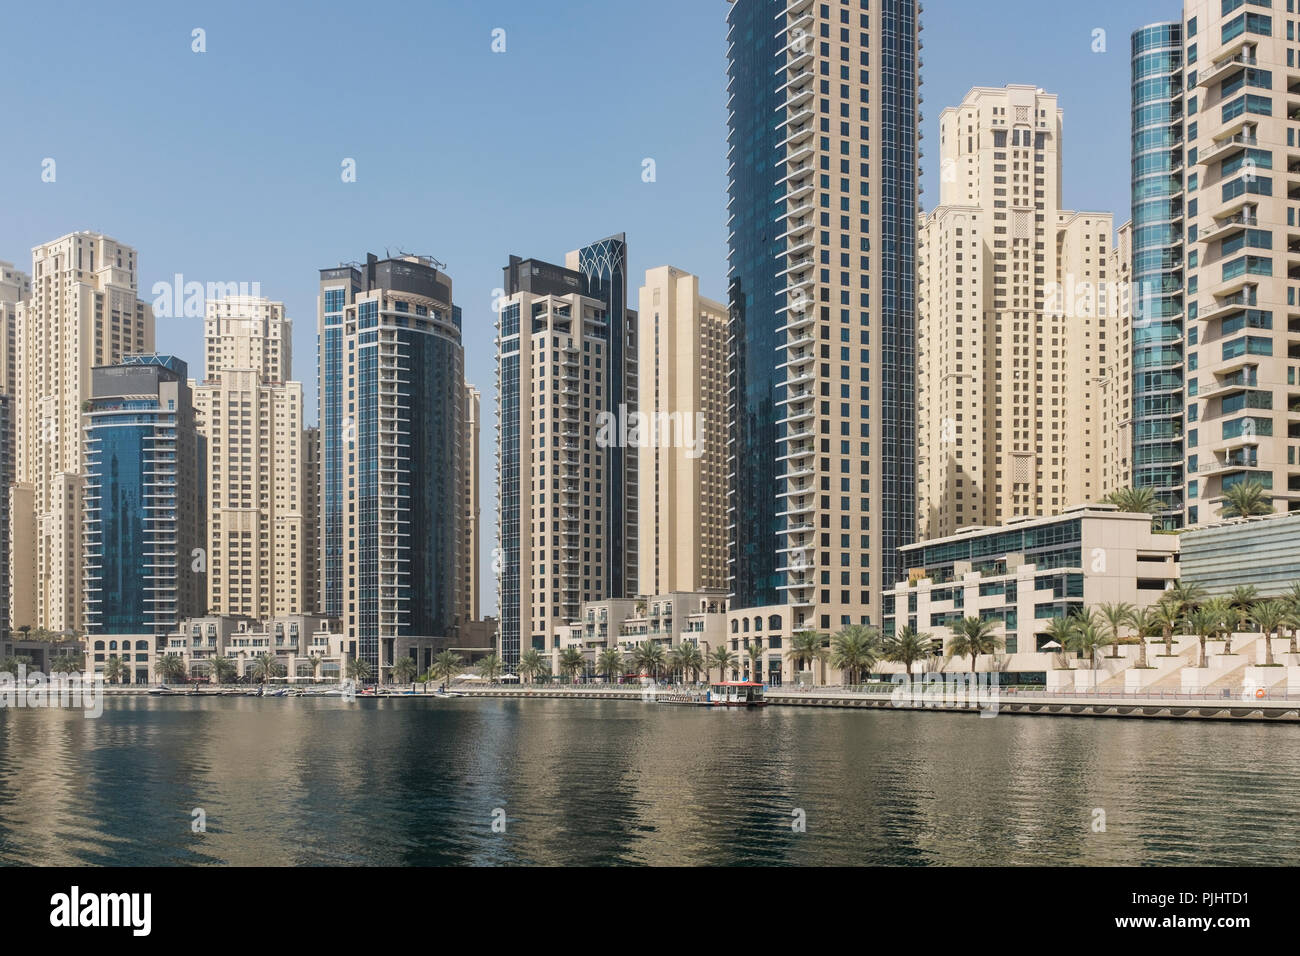 Los rascacielos de Dubai Marina, con el color arena torres residenciales de Jumeirah Beach Residence en el fondo, en Dubai, Emiratos Árabes Unidos. Foto de stock